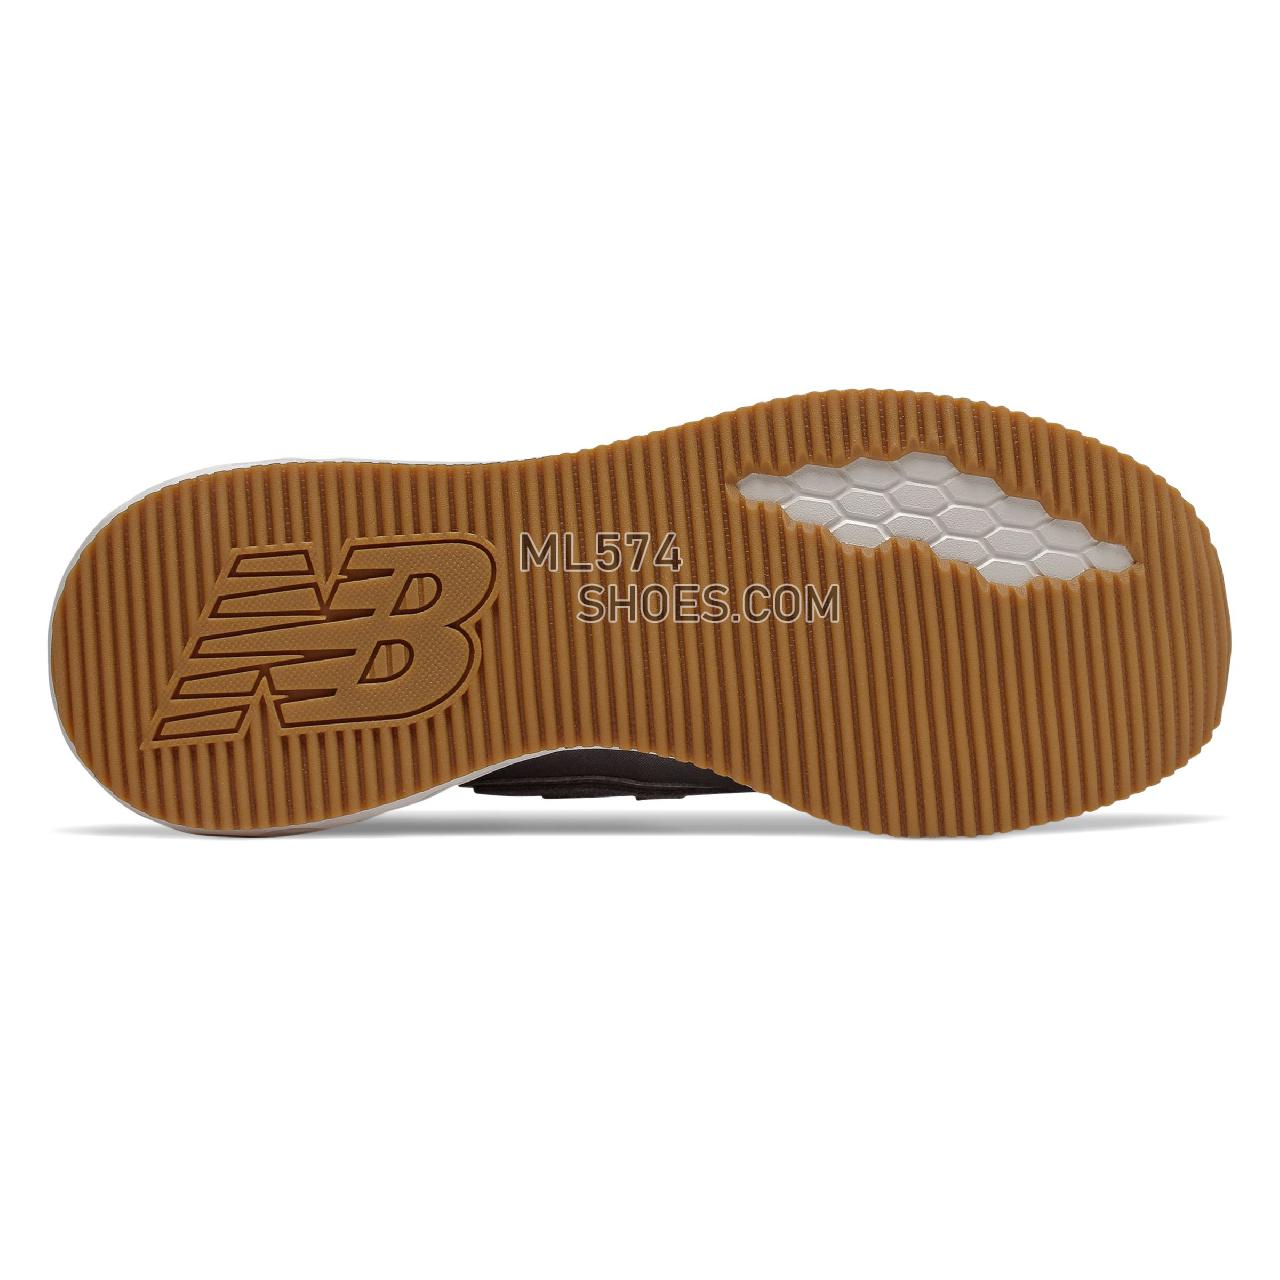 New Balance Fresh Foam X-70 - Men's Sport Style Sneakers - Castlerock with Black - MSX70RB